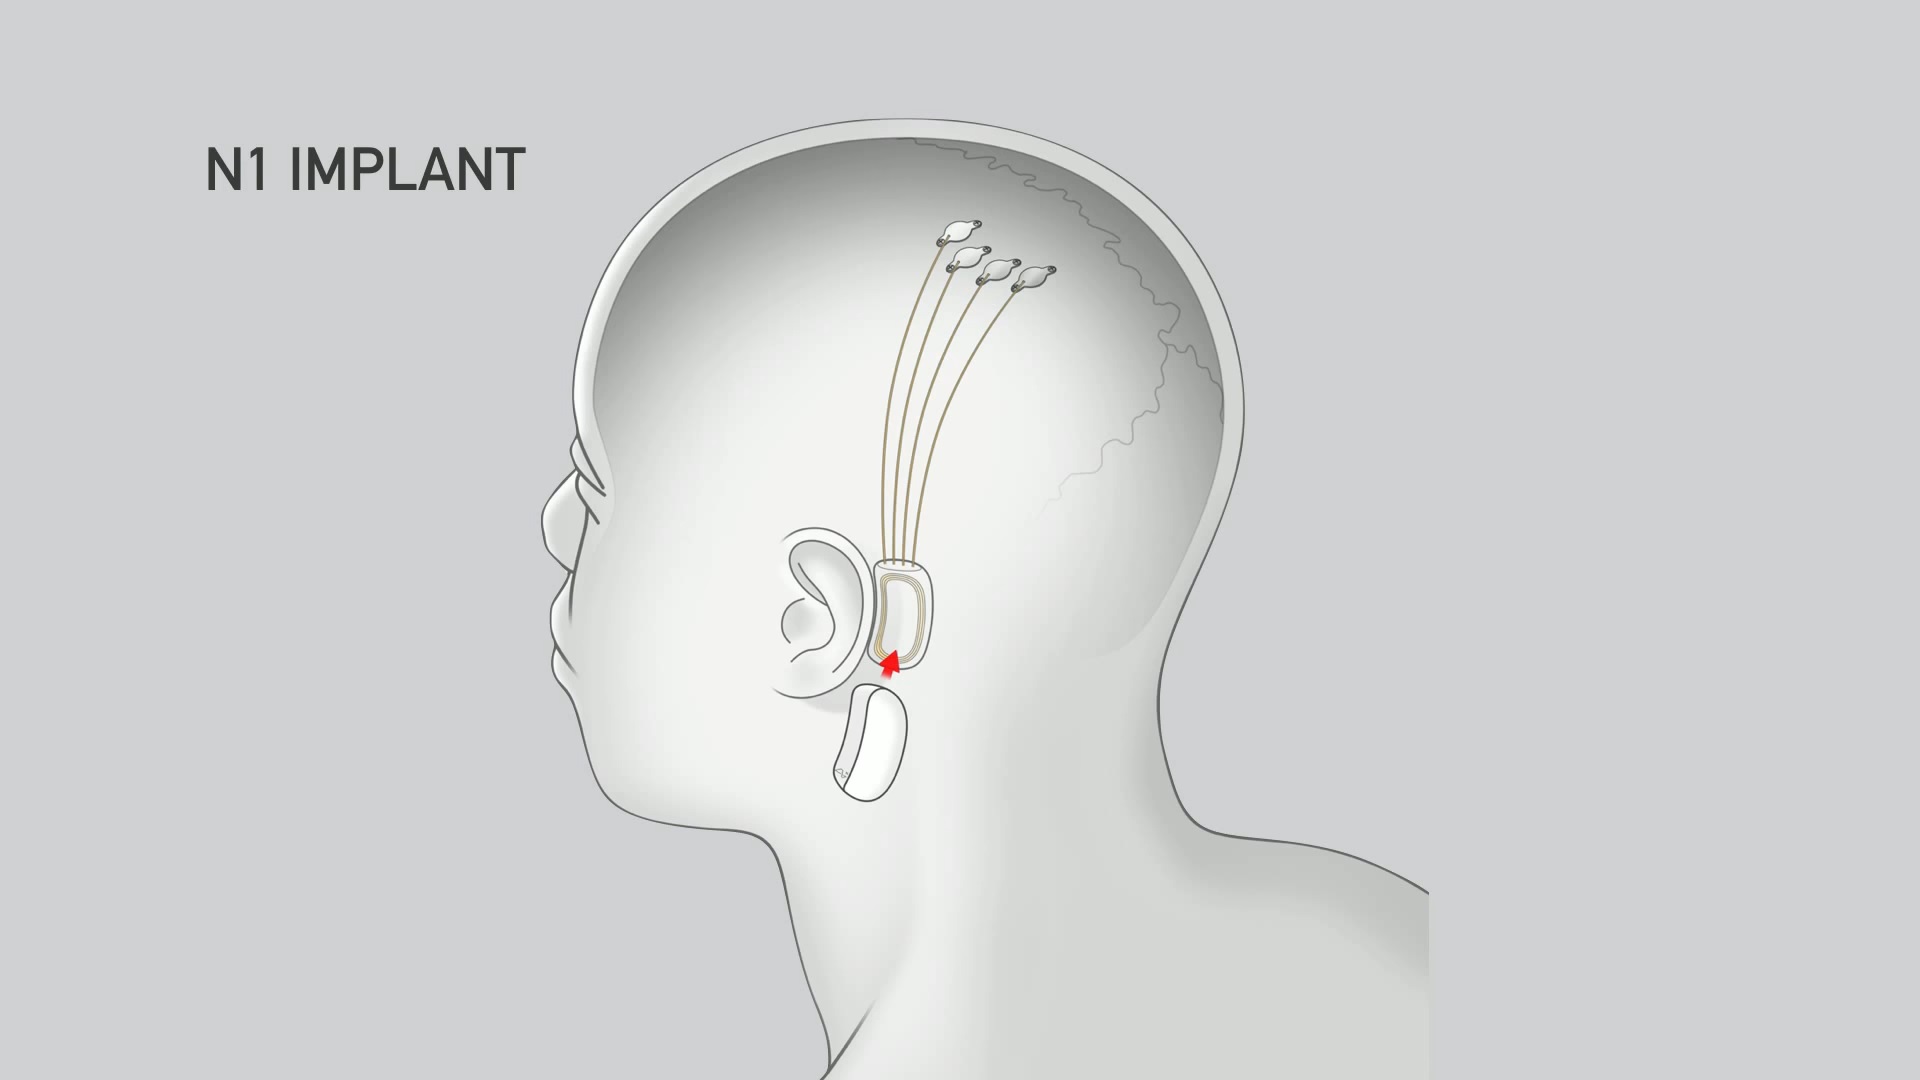 O dispositivo da Neuralink será conectado atrás da orelha e o chip implantado no cérebro deve expandir o controle do cérebro pelos humanos